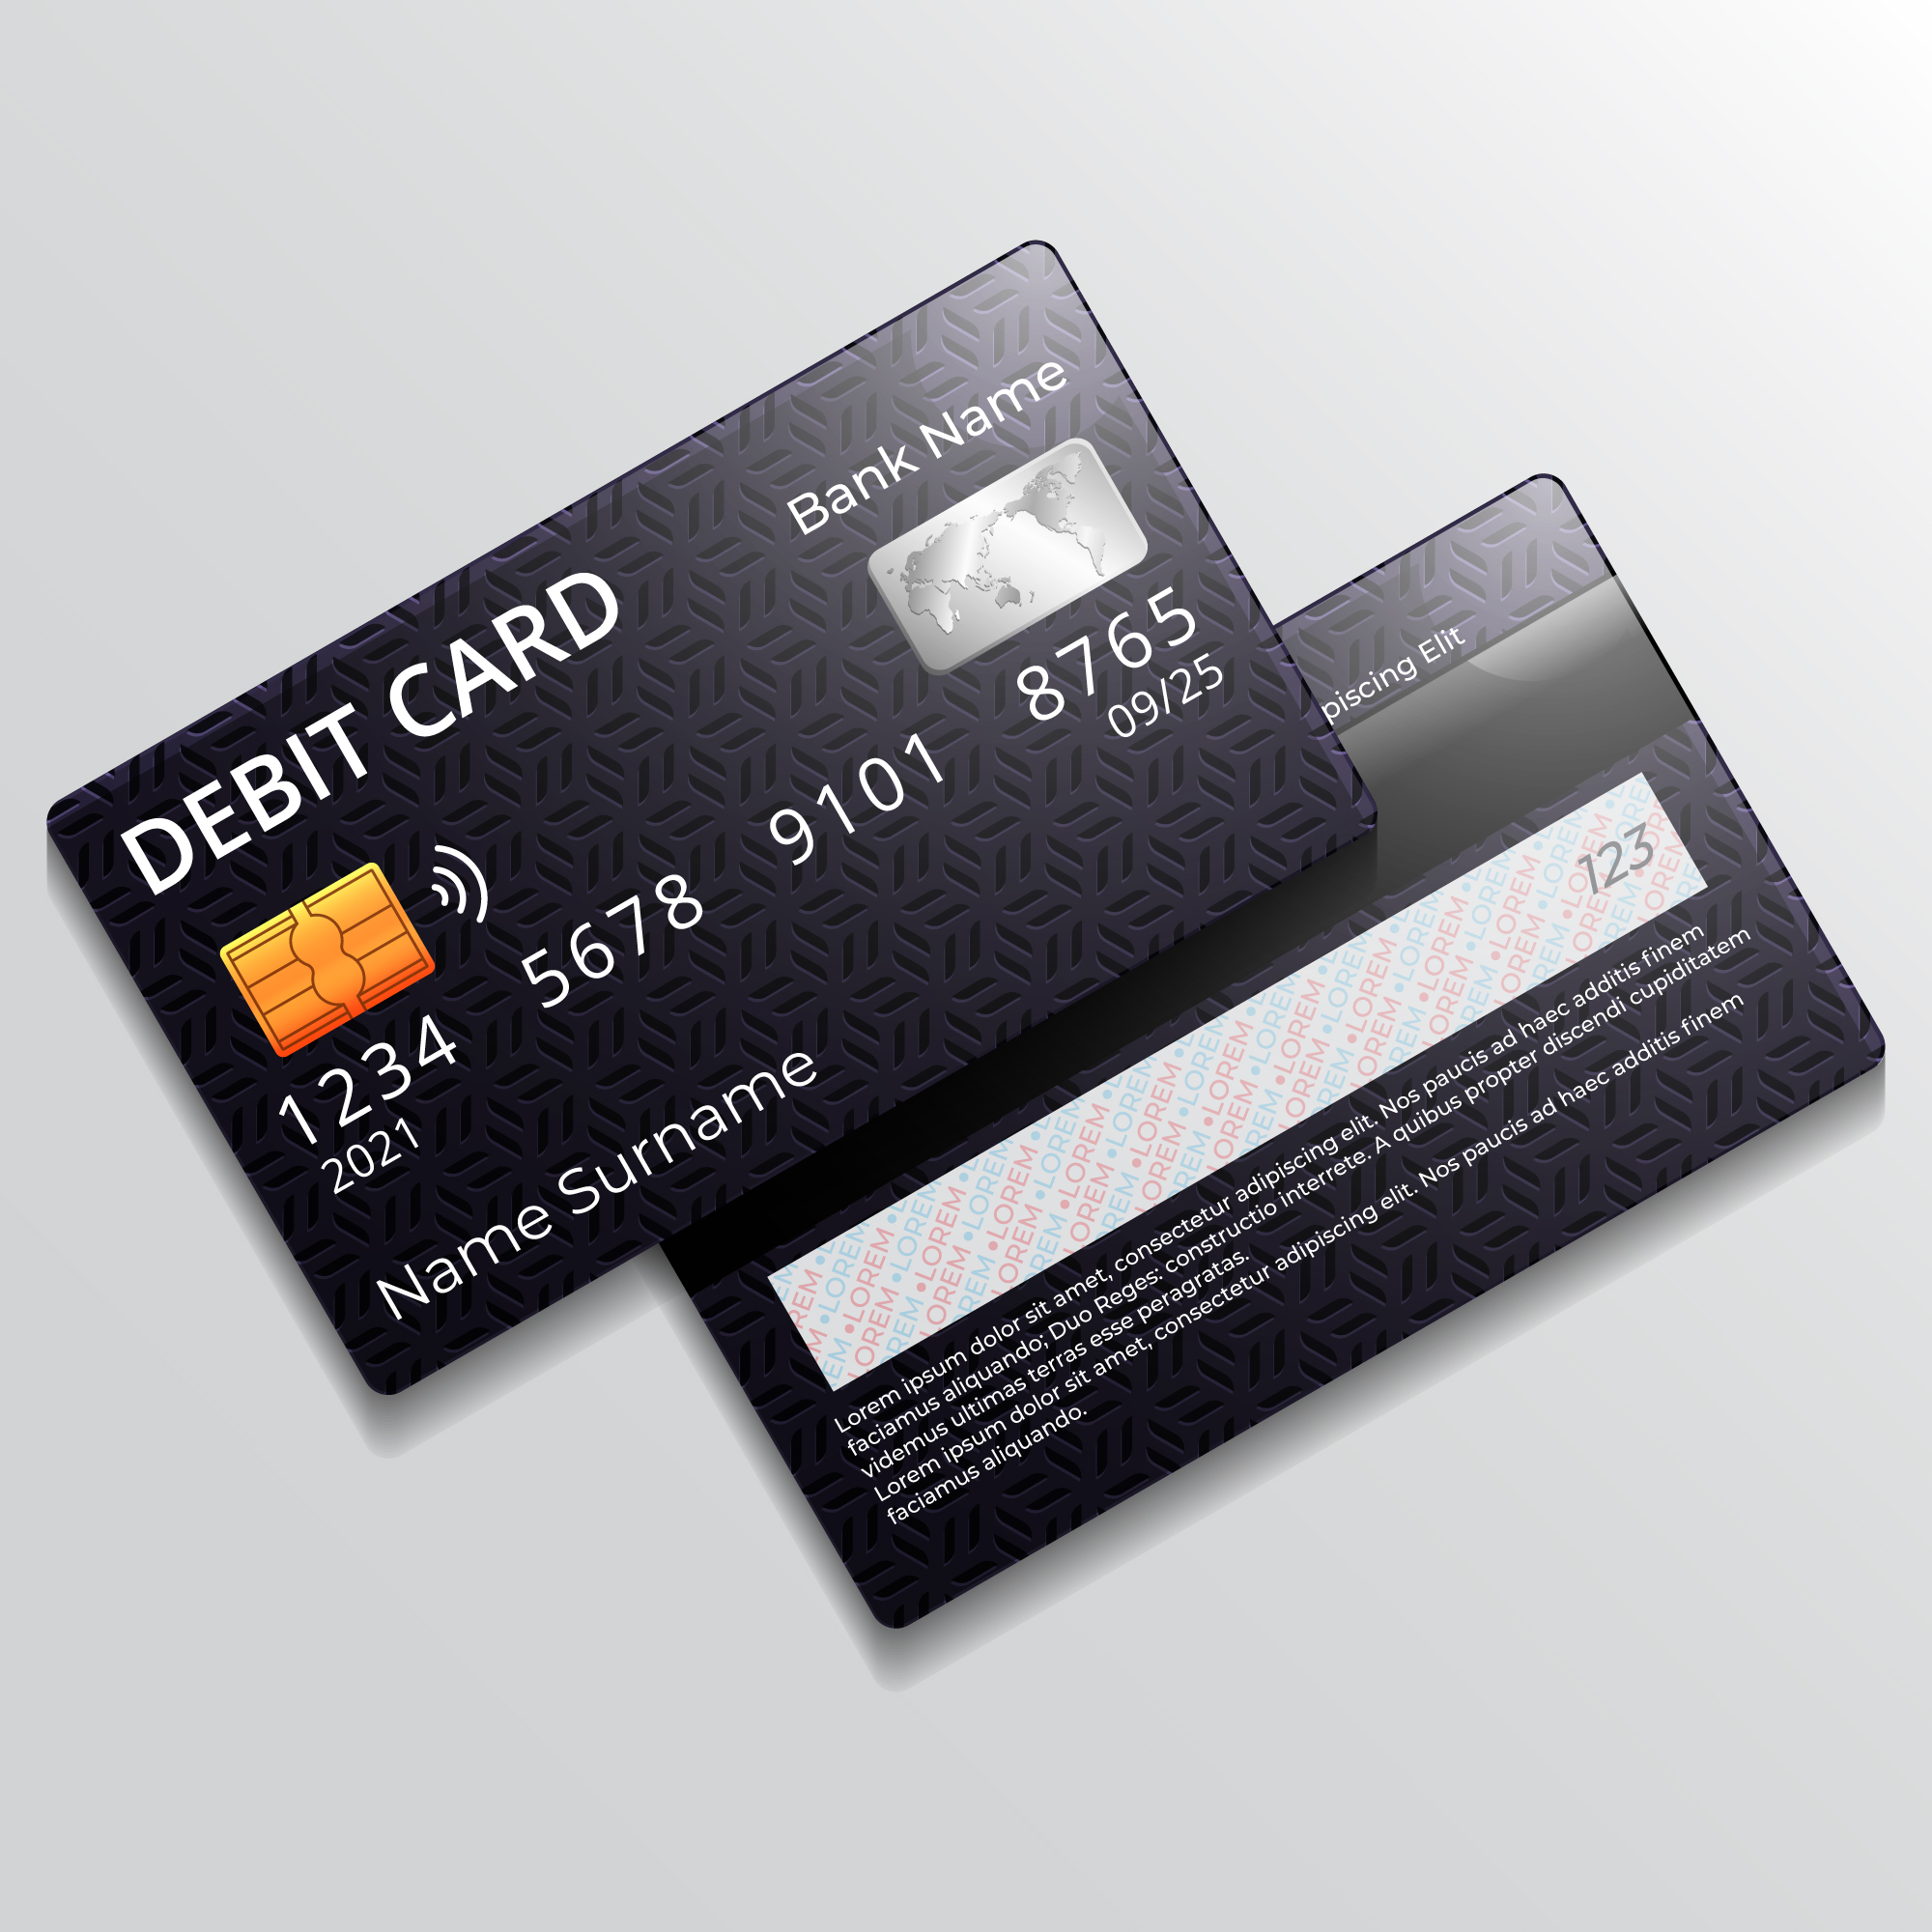 Để sử dụng thẻ VISA Debit, khách hàng phải nạp tiền vào tài khoản thanh toán của mình